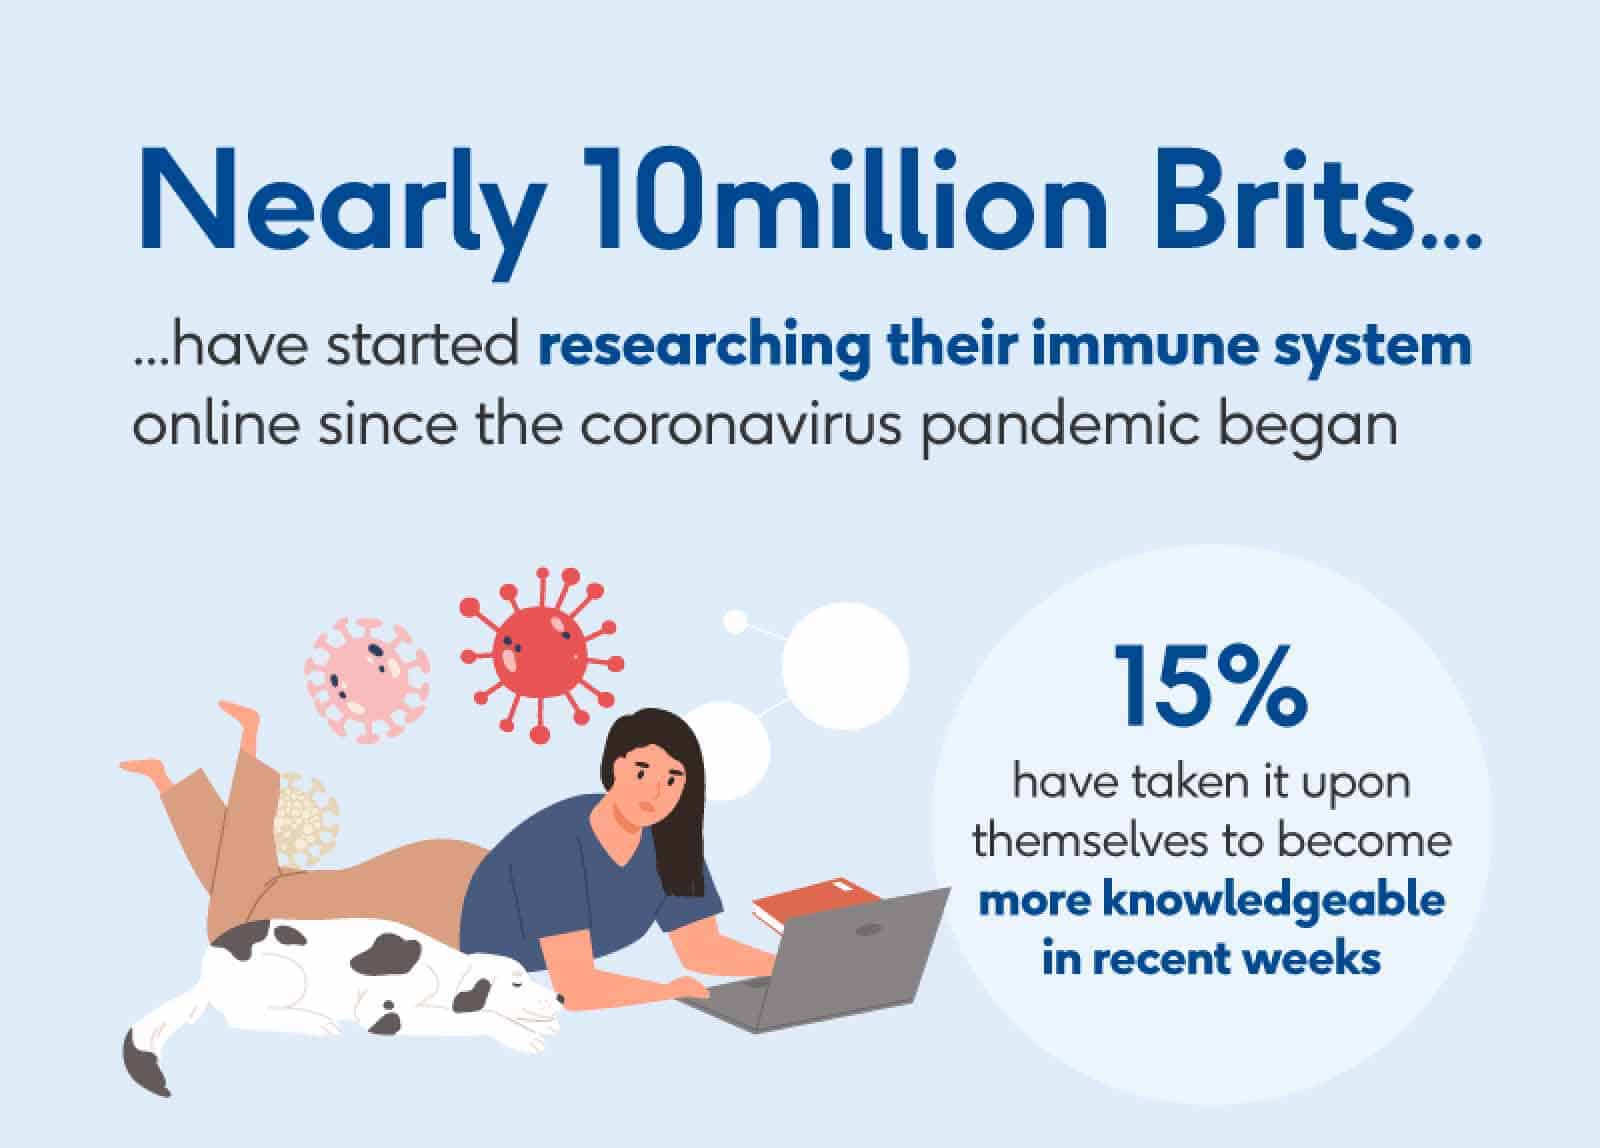 Los adultos británicos han comenzado a investigar su sistema inmunológico en Internet desde que comenzó la pandemia de coronavirus